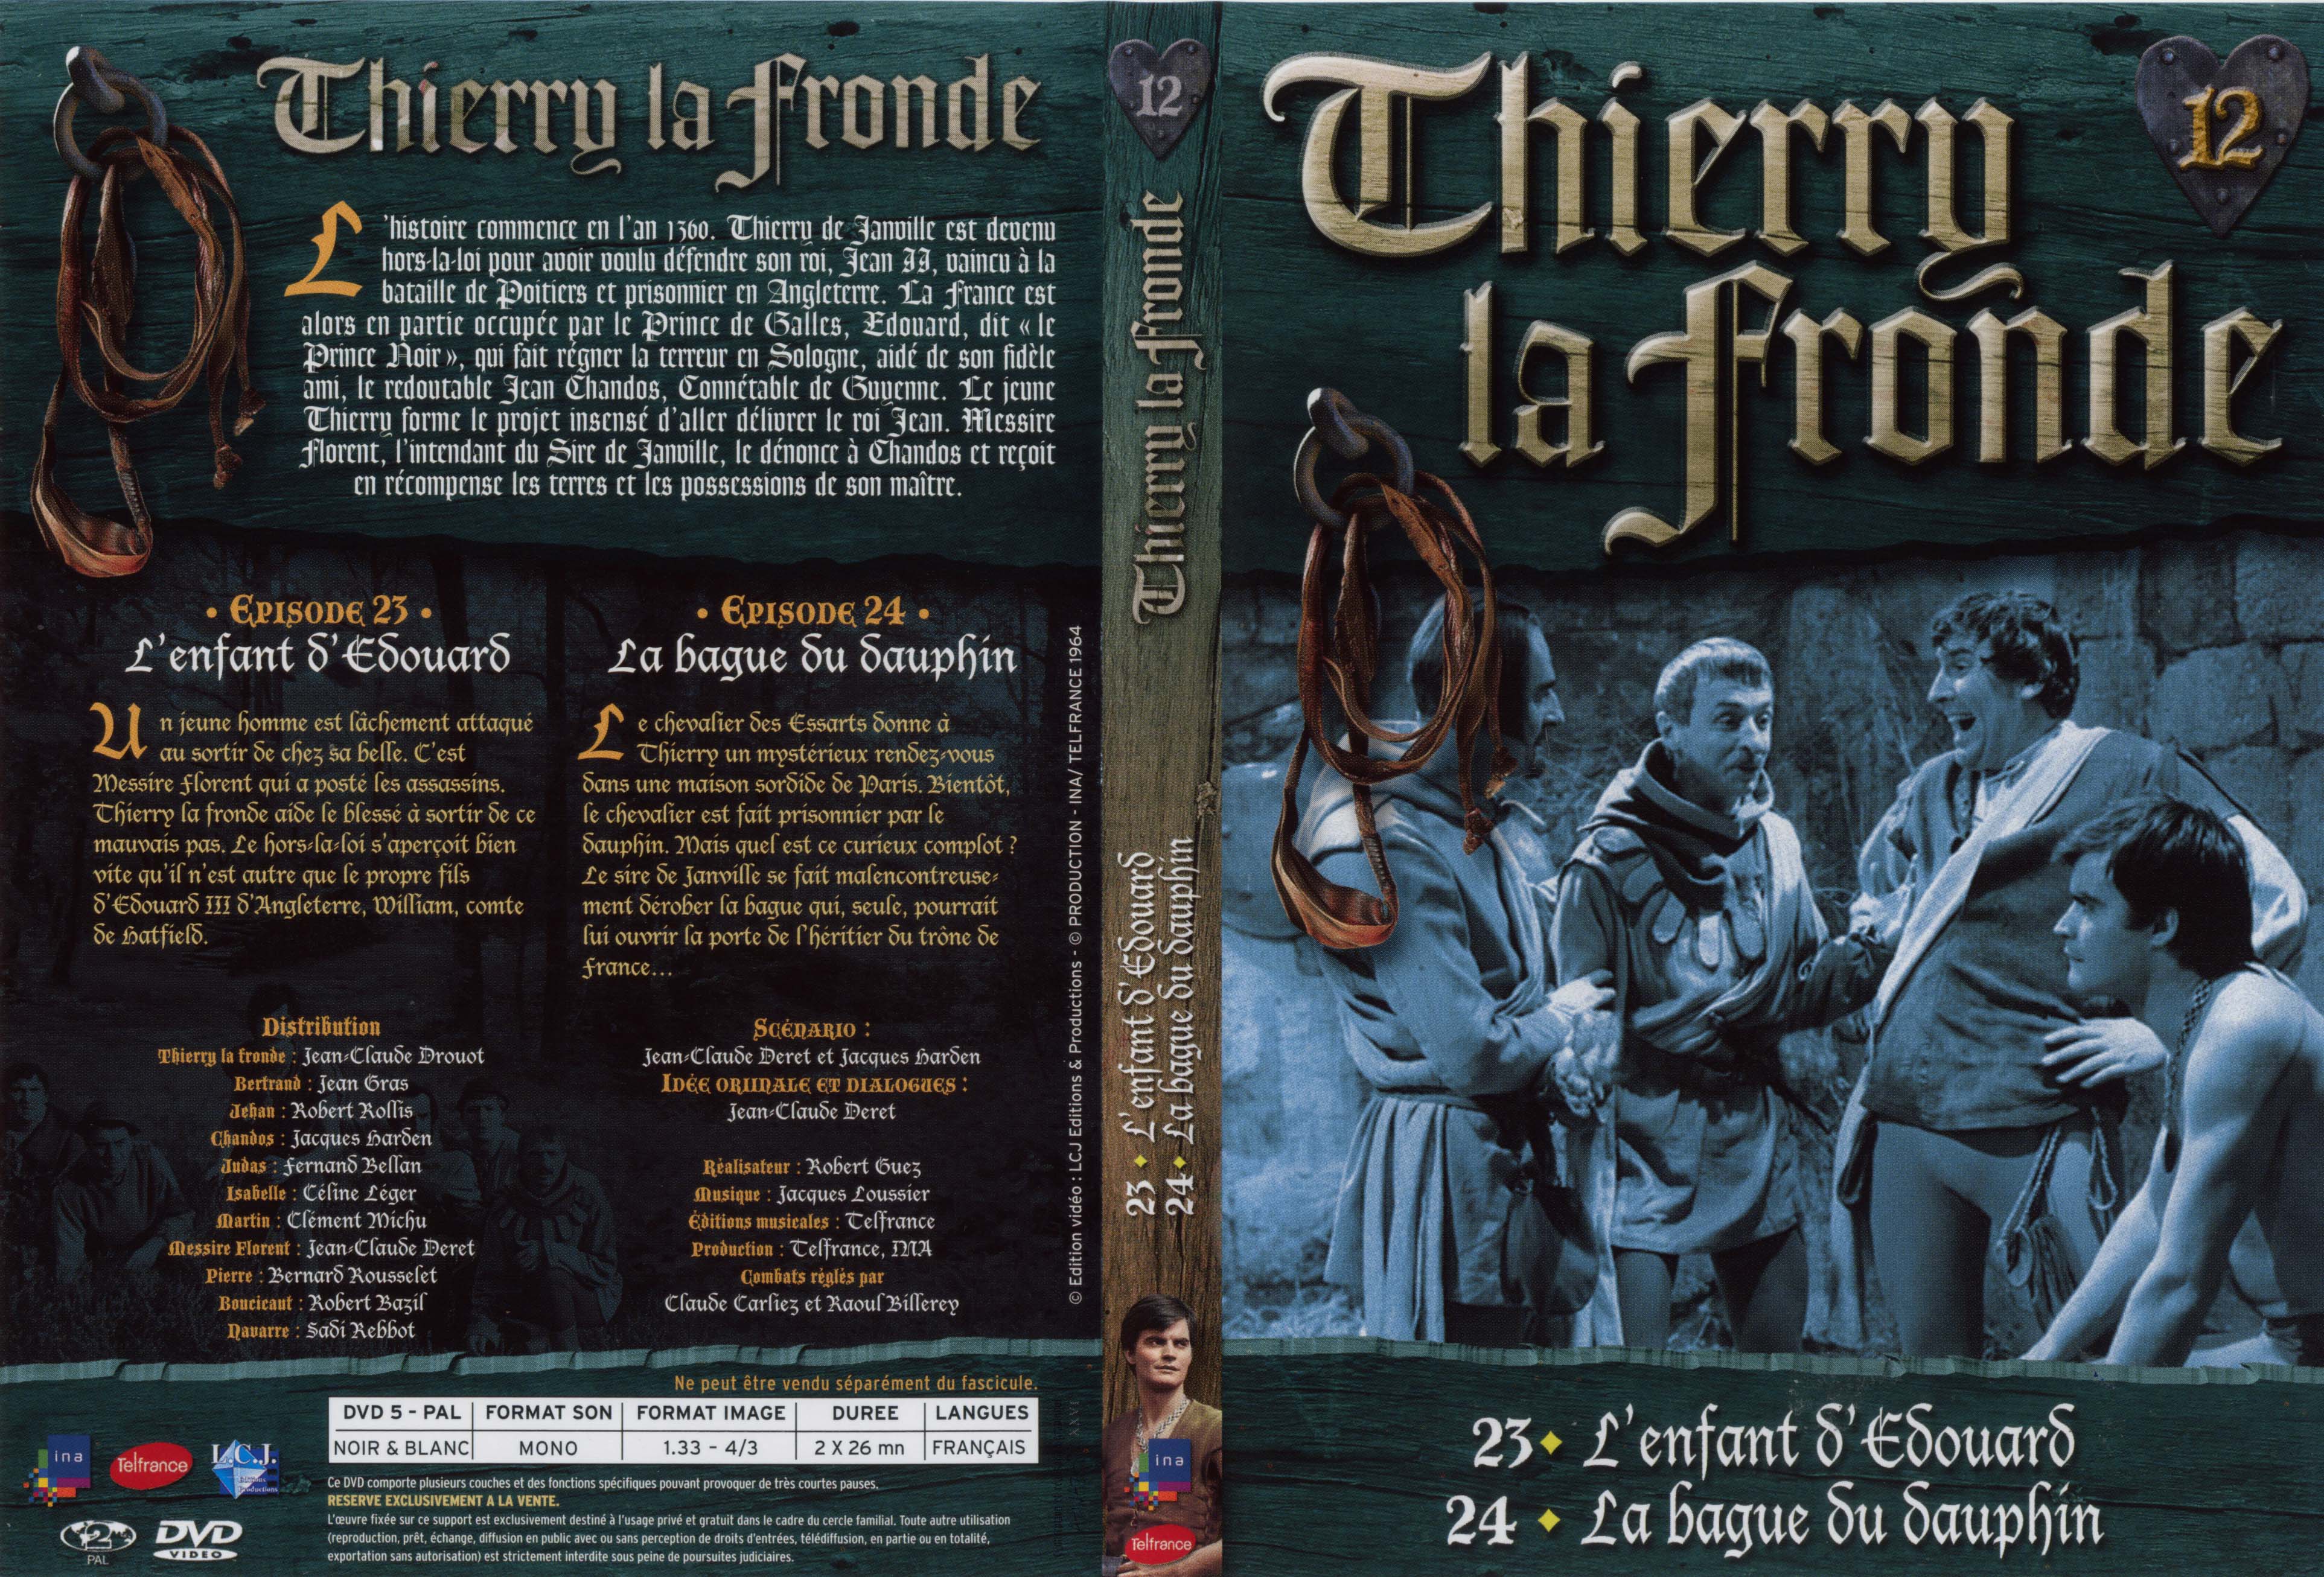 Jaquette DVD Thierry la Fronde vol 12